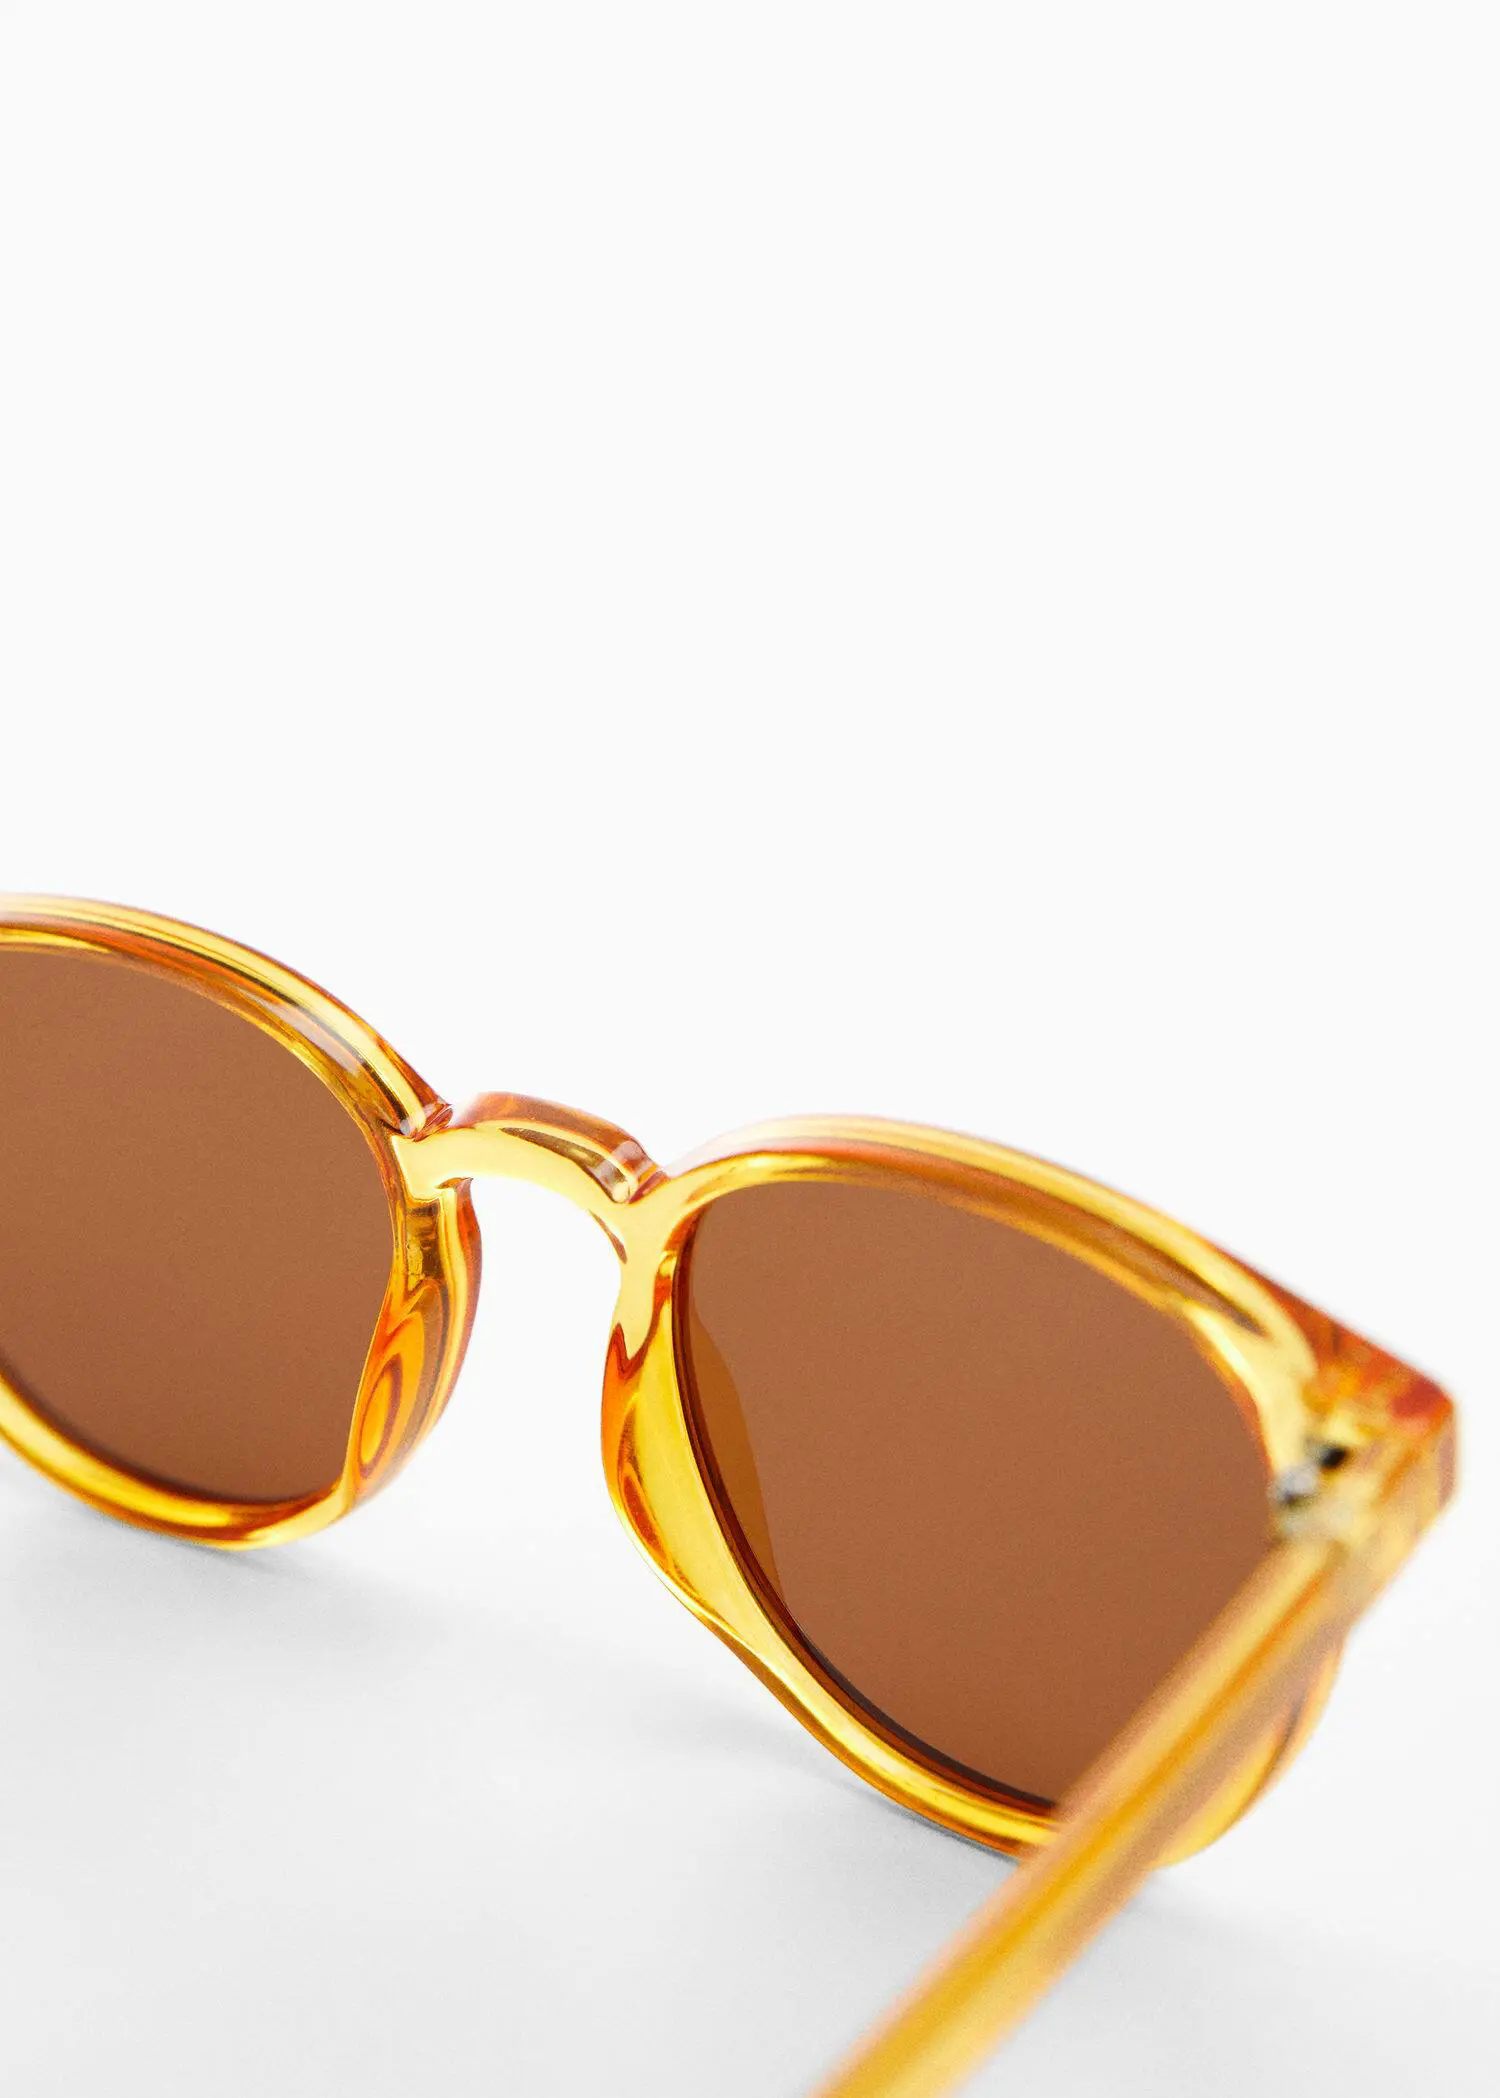 Mango Polarized sunglasses. 3